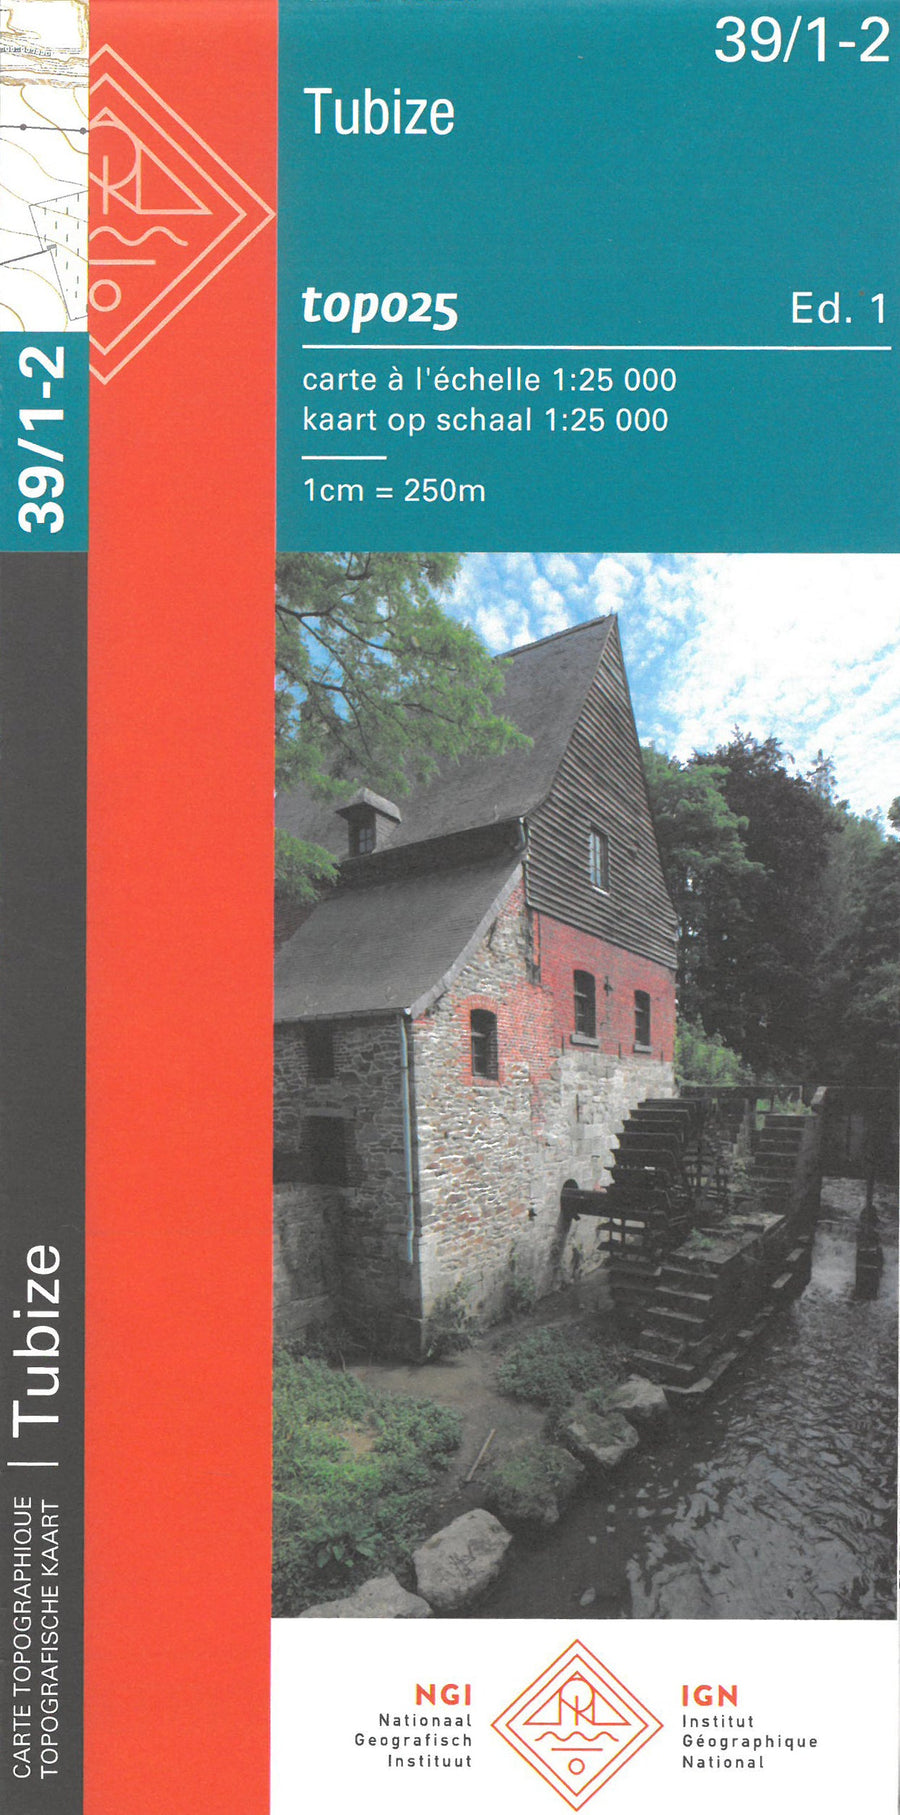 Carte topographique n° 39/1-2 - Tubize (Belgique) | NGI topo 25 carte pliée IGN Belgique 